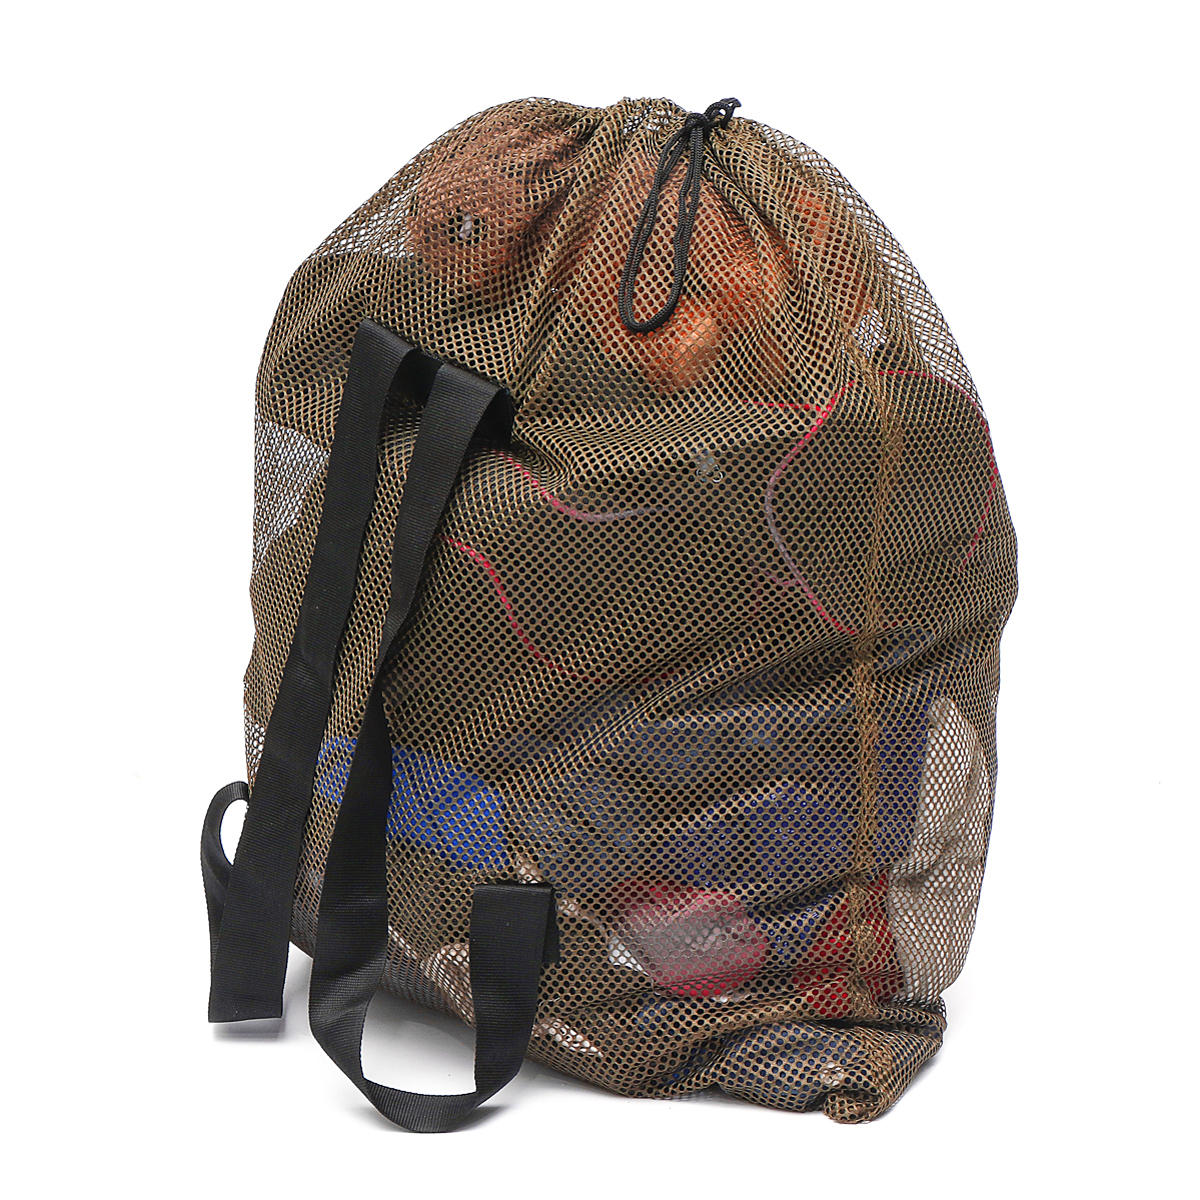 Açık hava taktik fileli omuz çantası kamp, avcılık, ördek yemi depolama için.